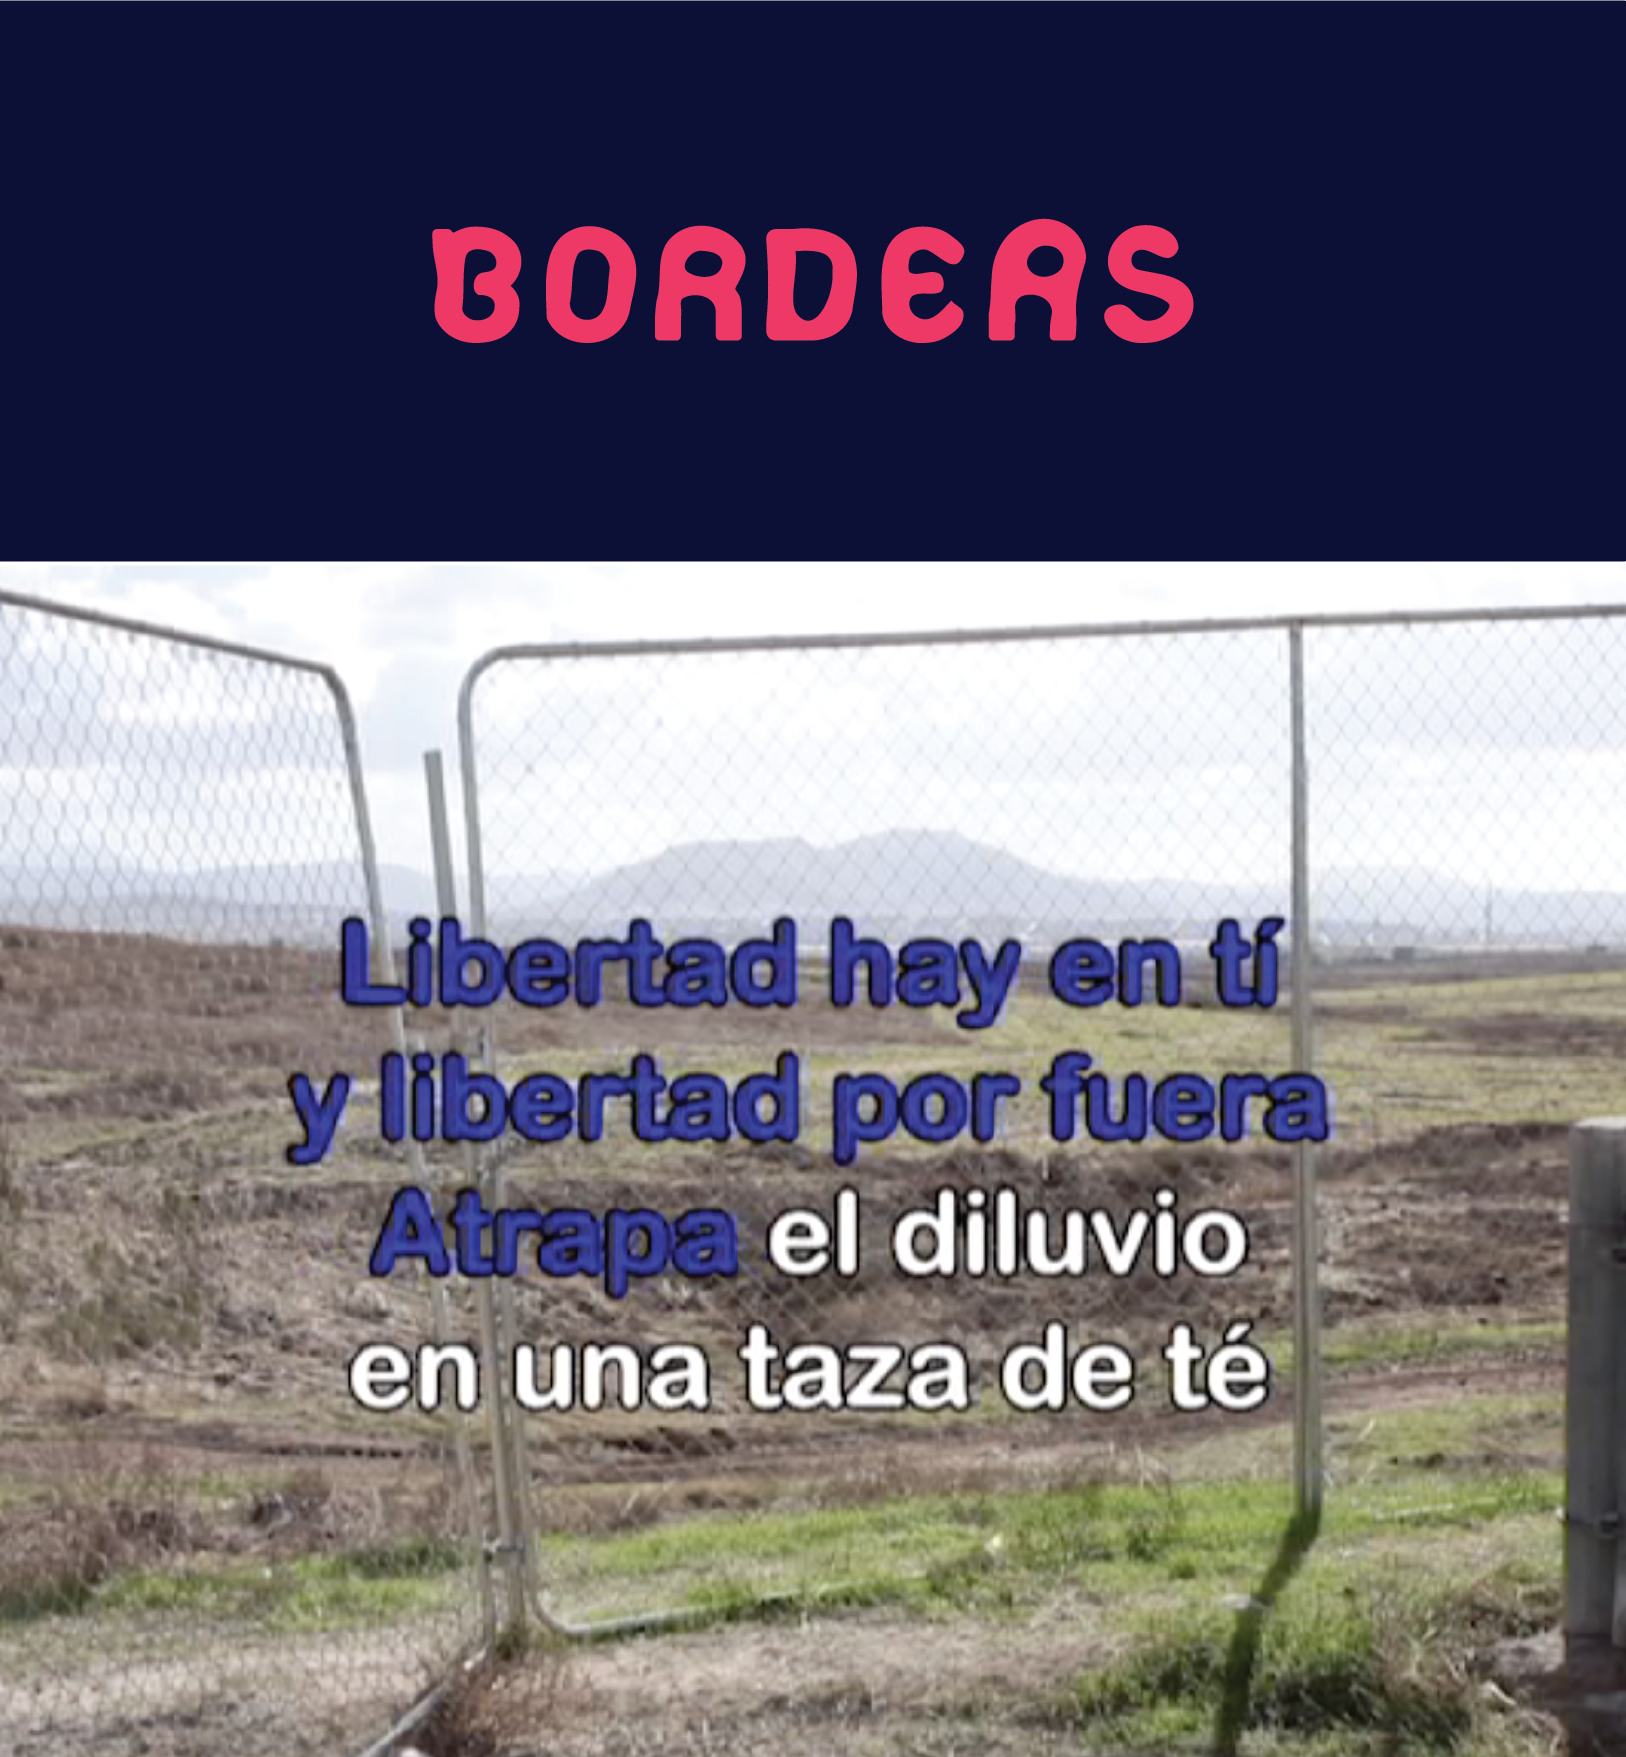 Borders rec.png